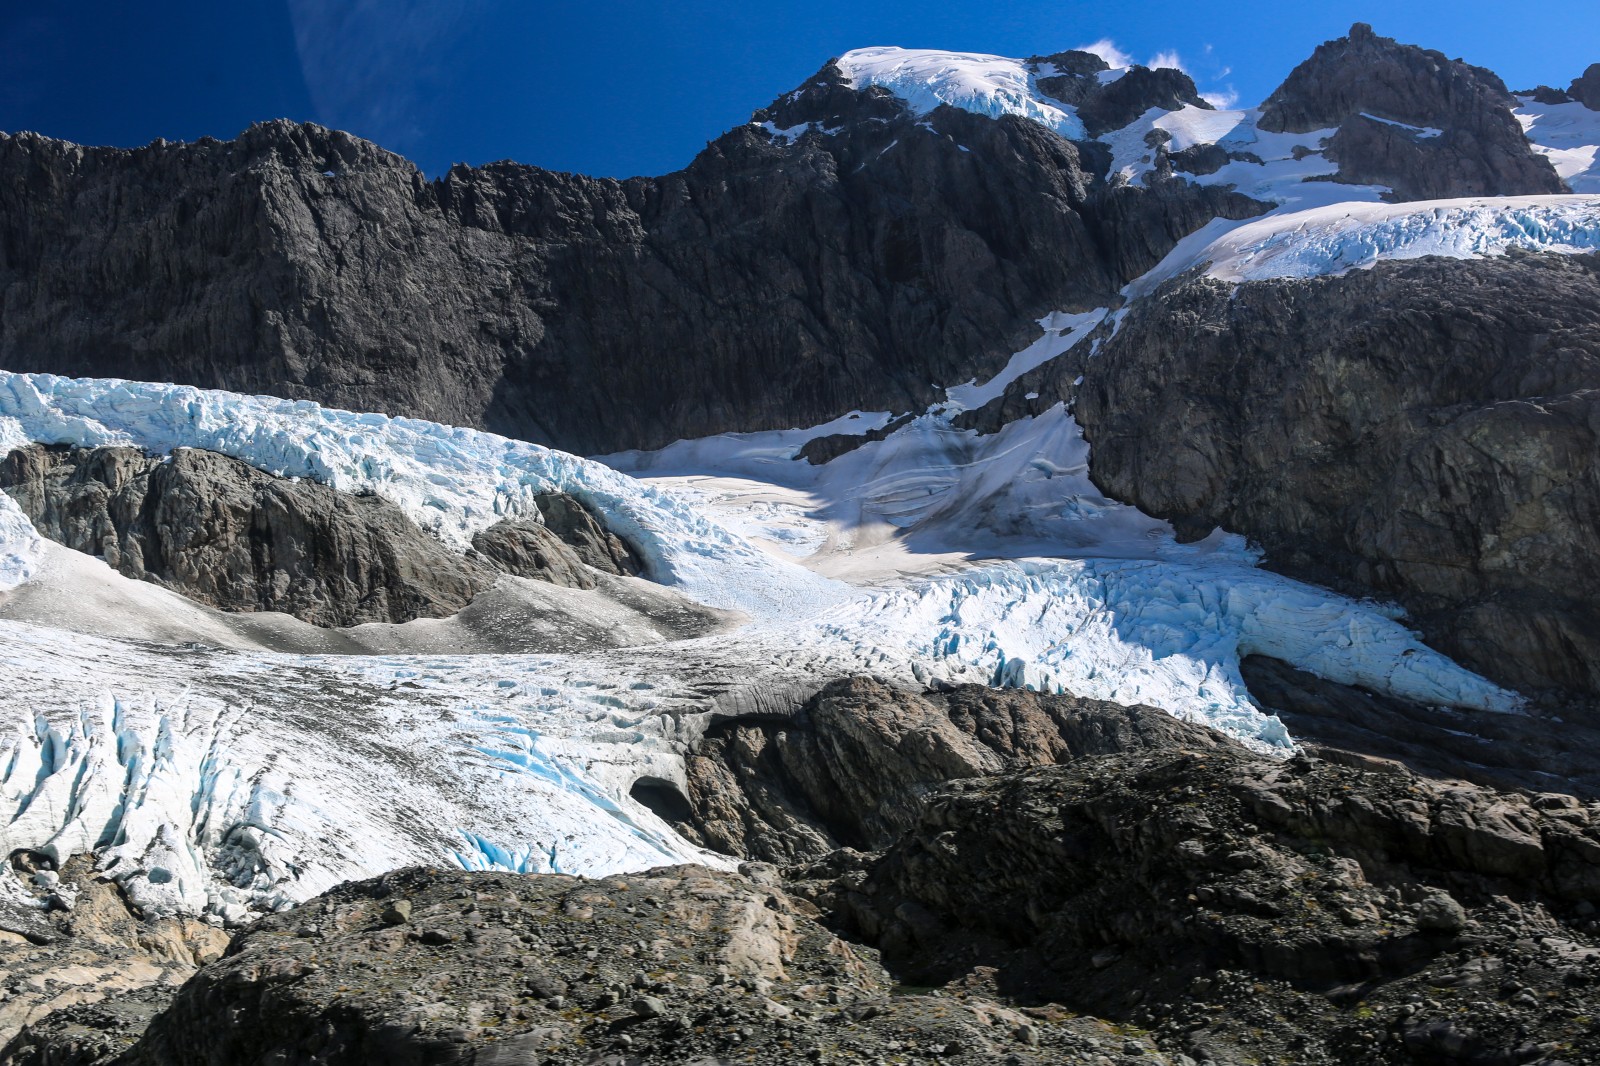 Glaciers winding through craggy rocks